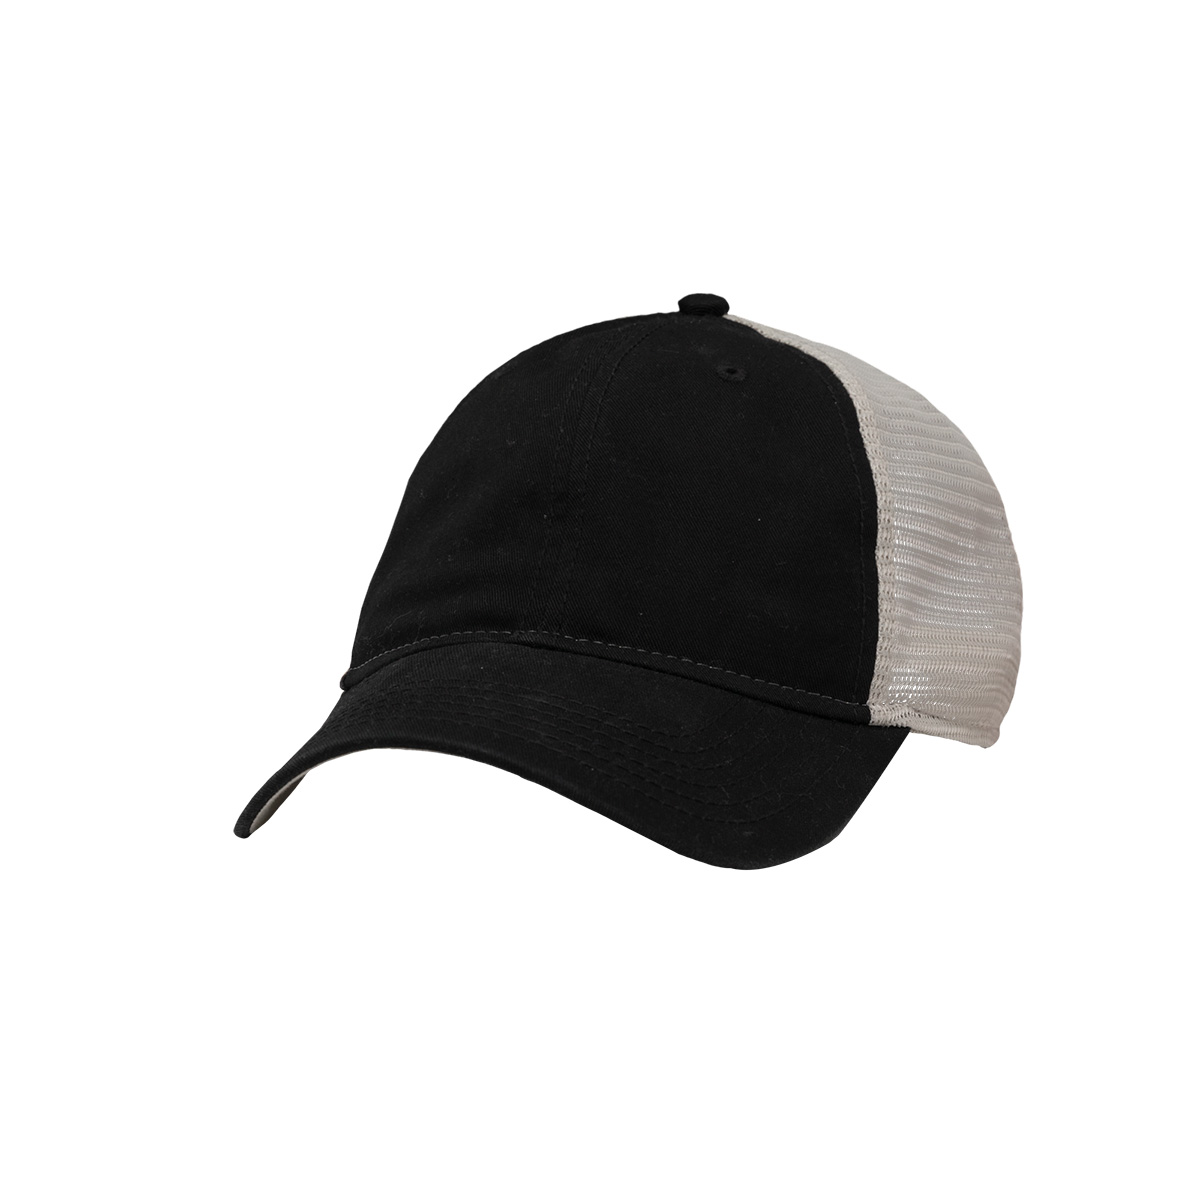 Sportsman Cap SP1750 - Mesh Dad Hat Fit